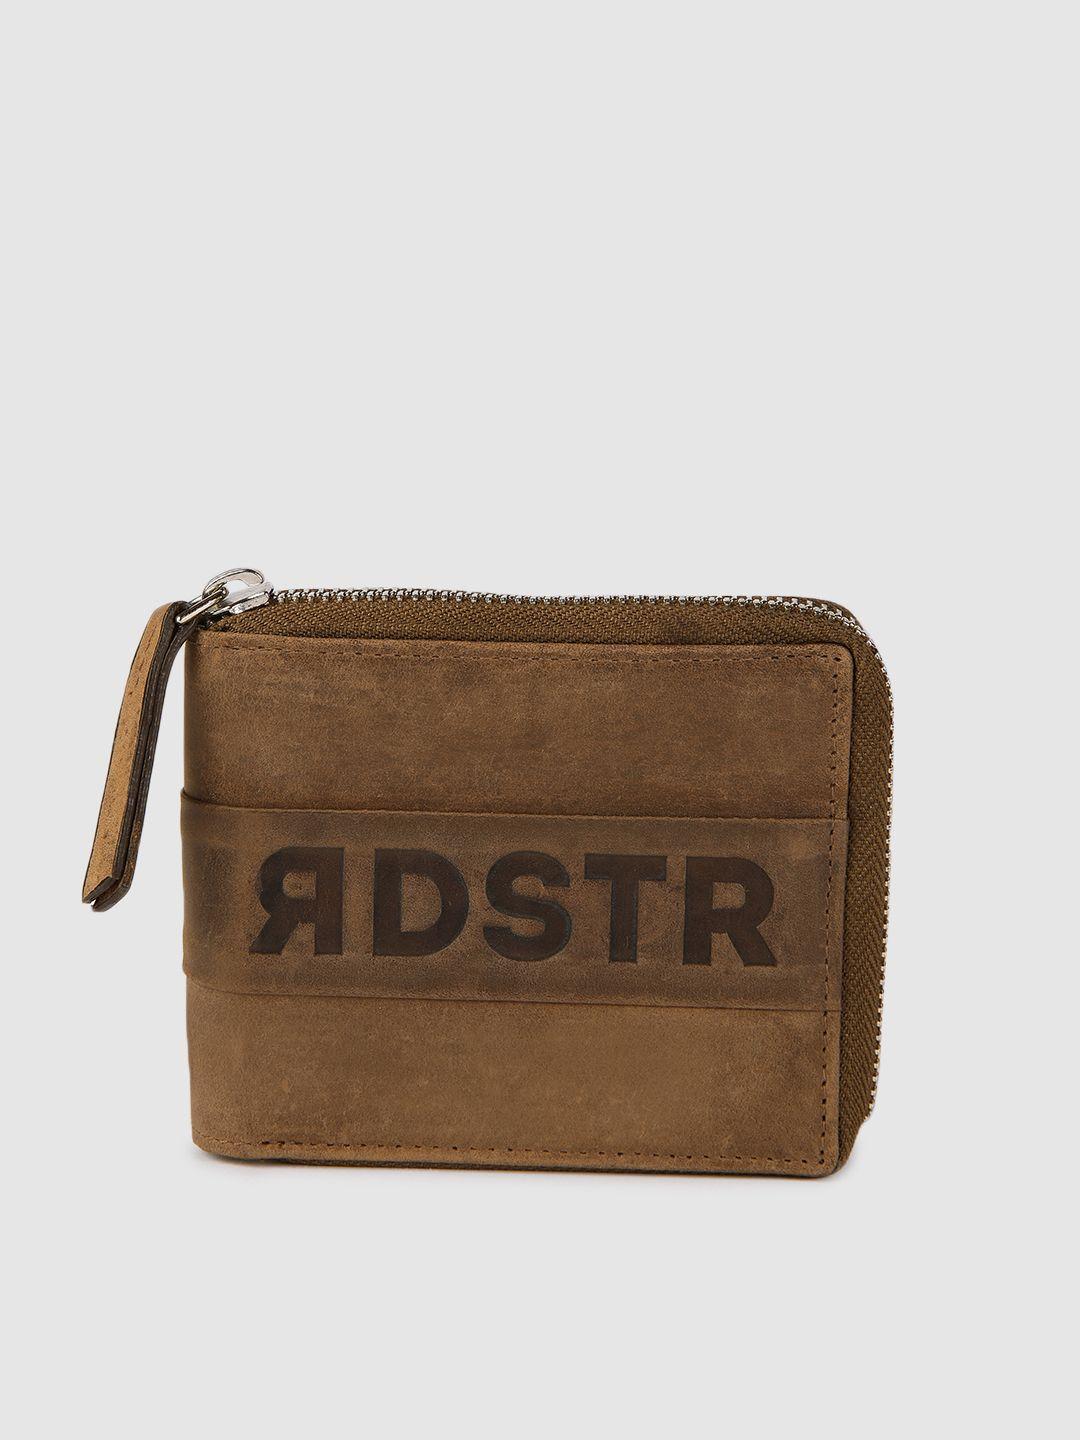 roadster men brown textured leather zip around wallet